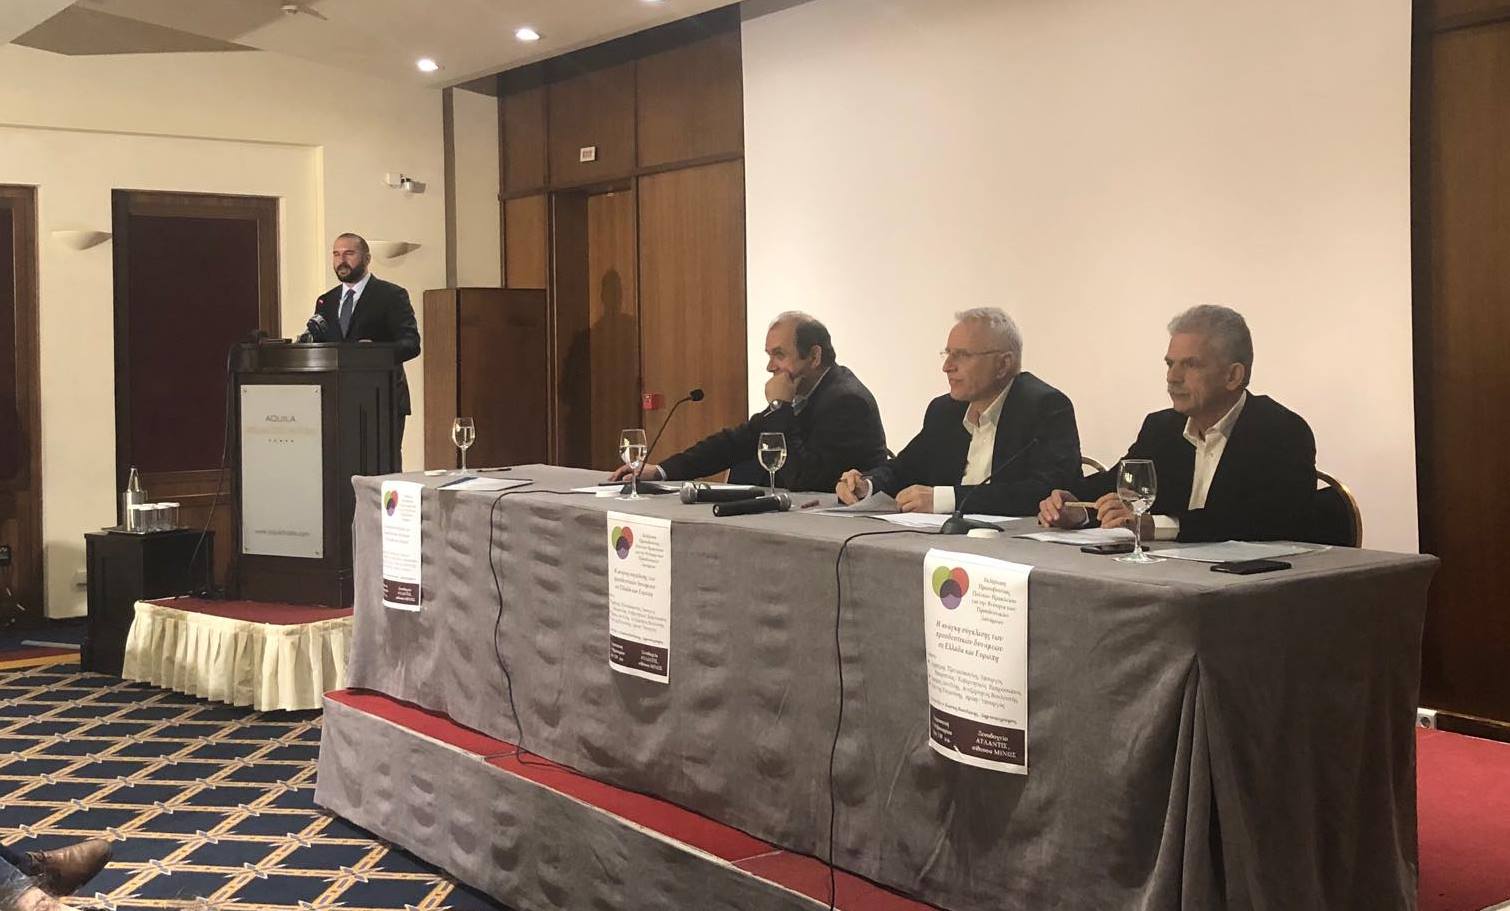 Ηράκλειο: Για την ανάγκη σύγκλισης των προοδευτικών δυνάμεων μίλησε ο Δ. Τζανακόπουλος . Εκδήλωση της Πρωτοβουλίας Πολιτών Ηρακλείου για την Ενότητα .....